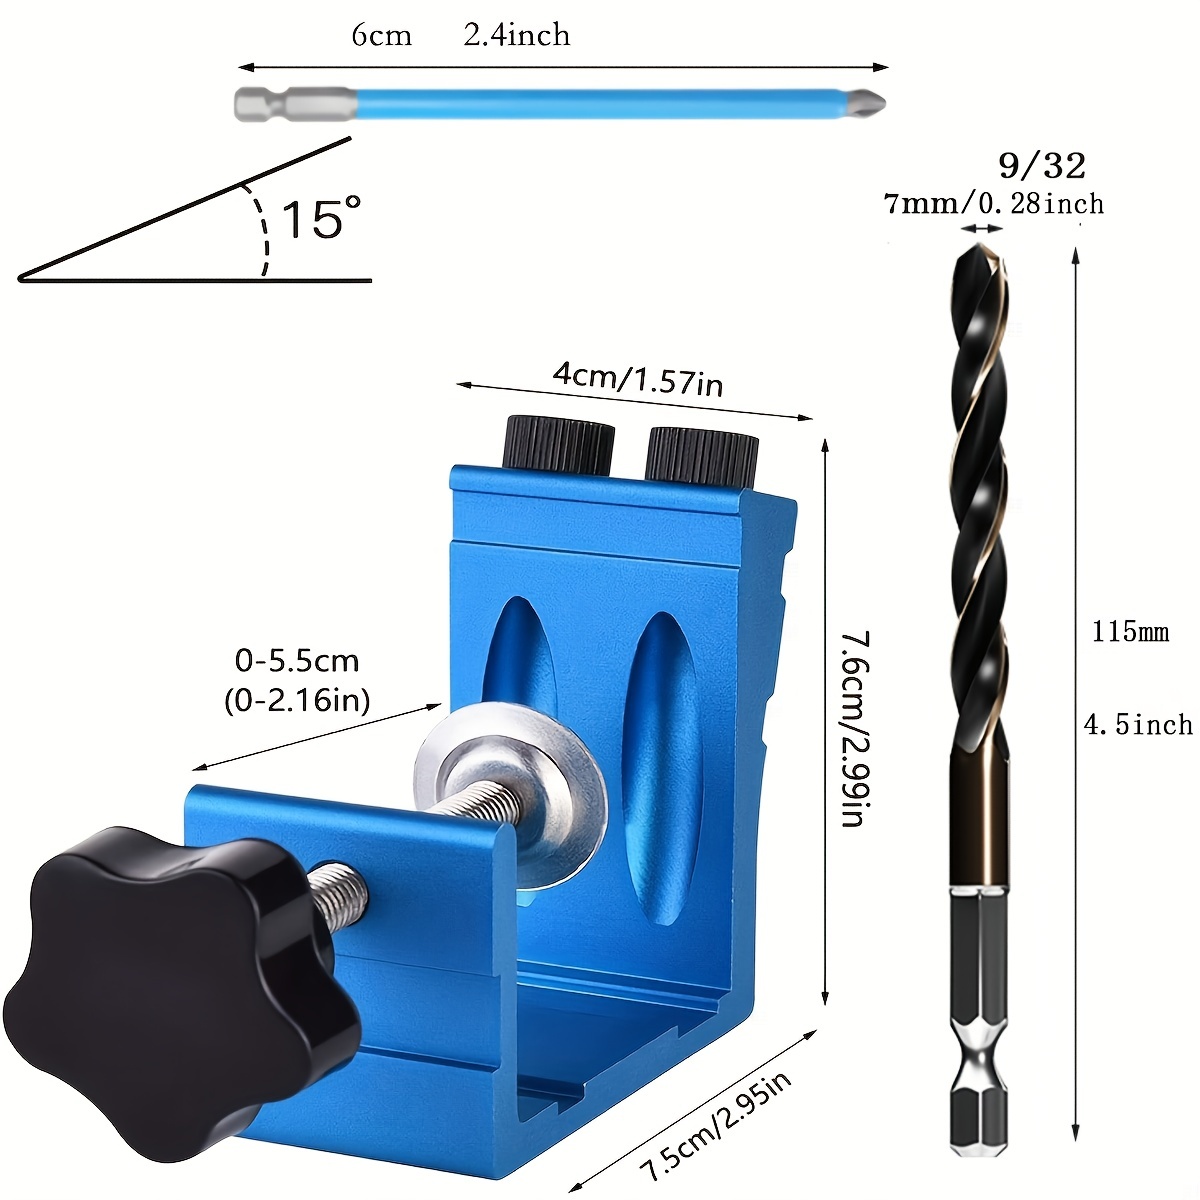 Tooltekt® Multi-angle Pocket Hole Jig